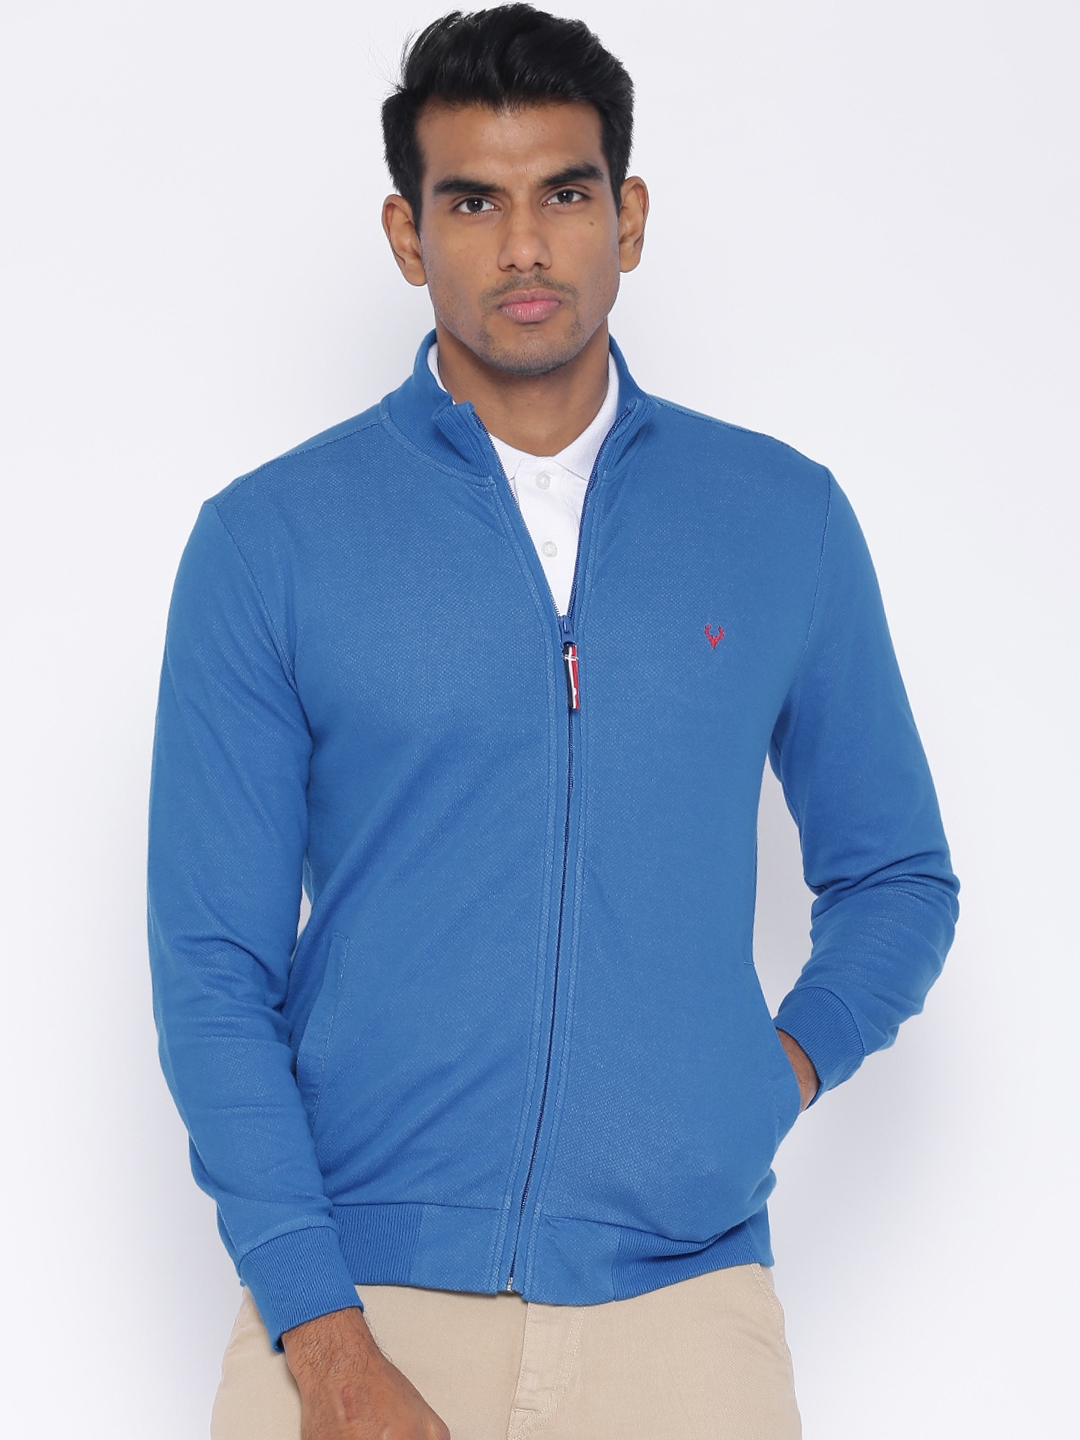 Buy Allen Solly Sport Blue Sweatshirt - Sweatshirts for Men 1075637 ...